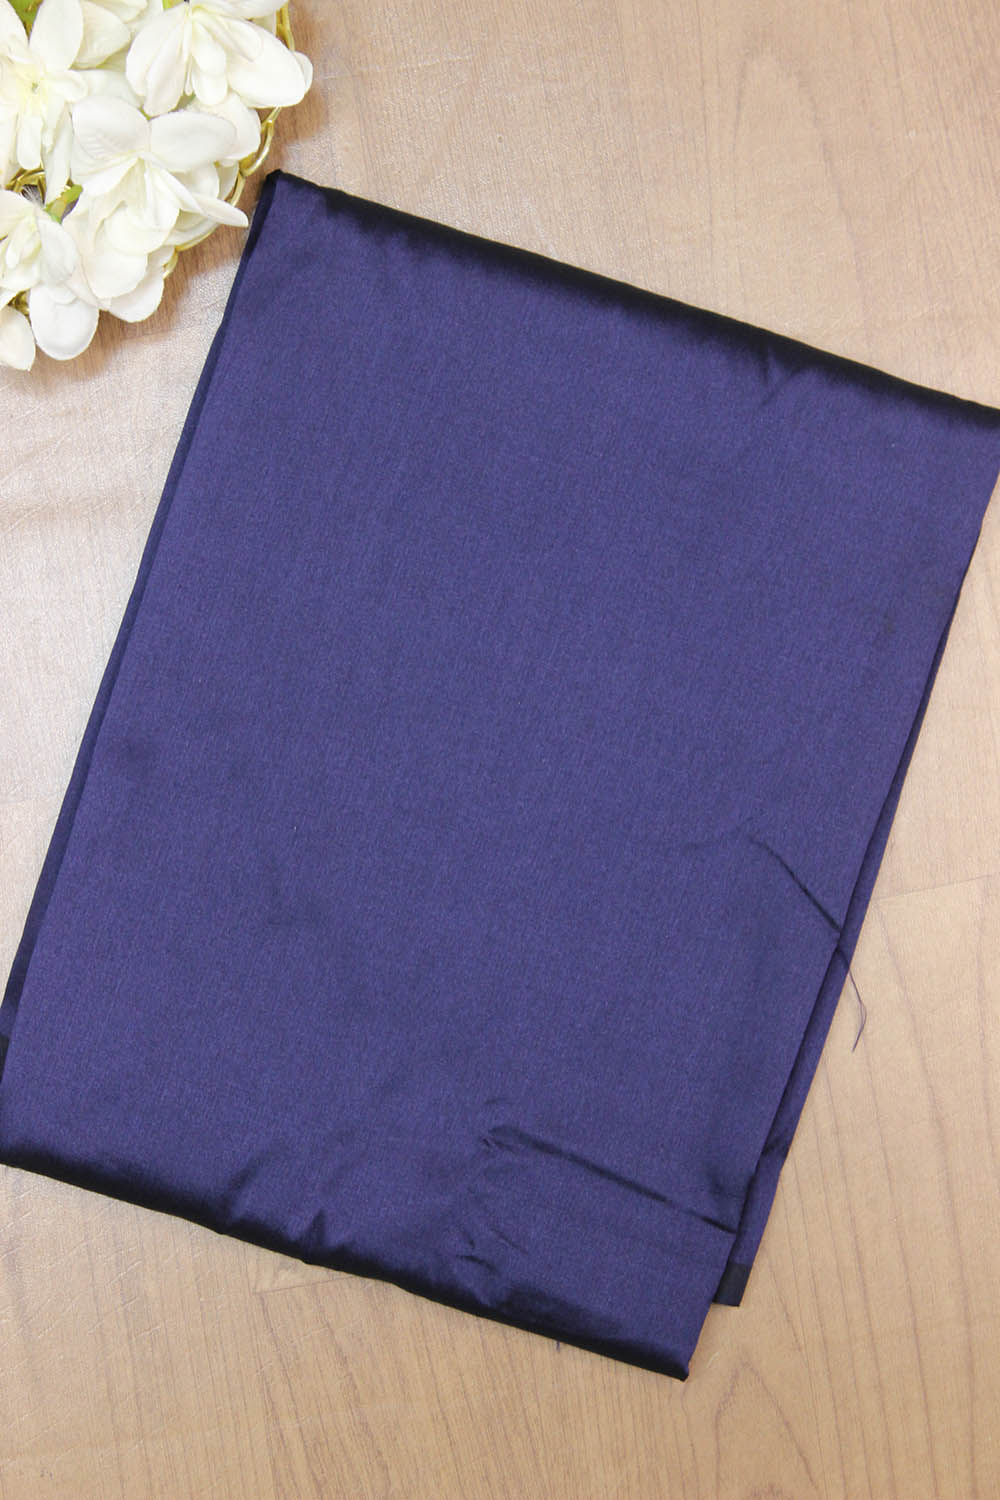 Blue Banarasi Cotton Silk Three Piece Unstitched Suit Set - Luxurion World